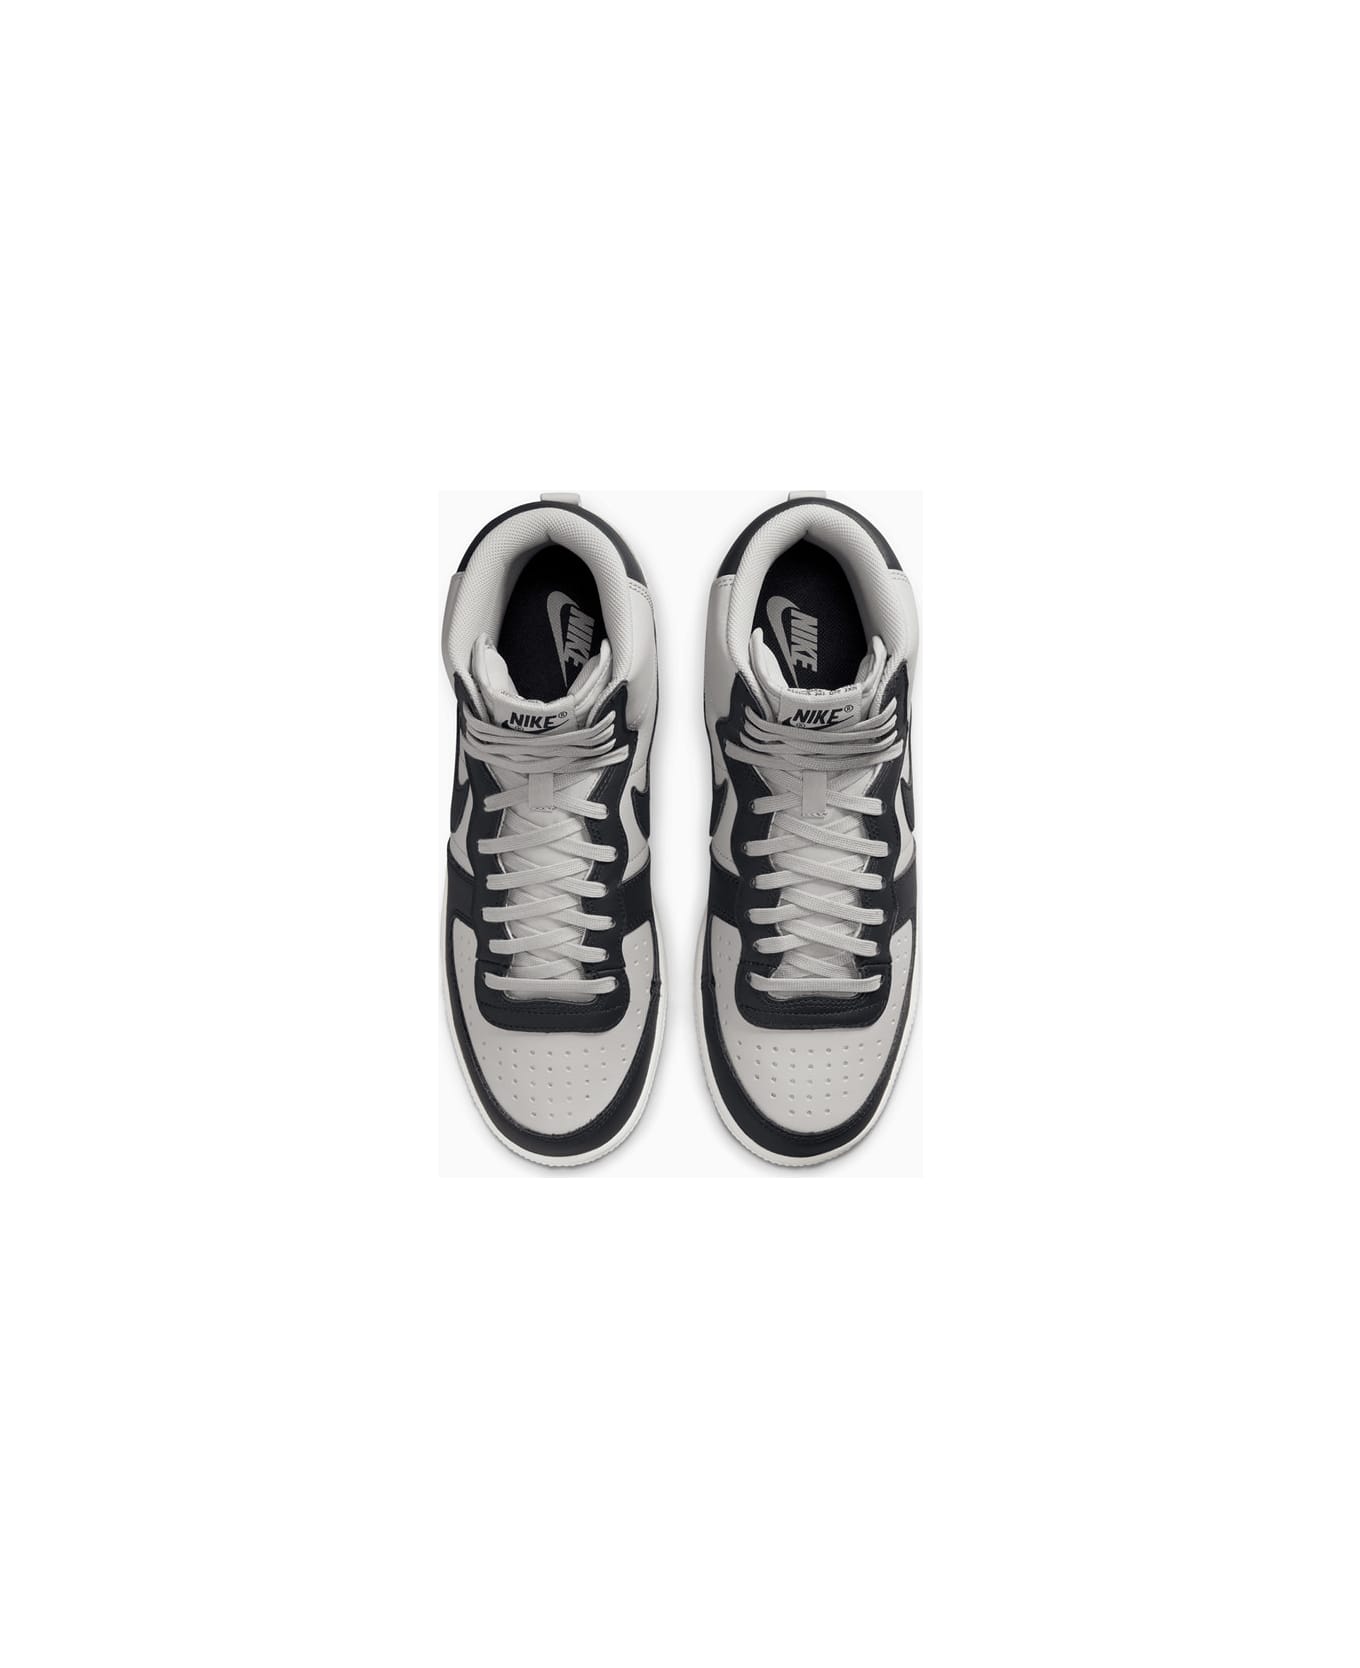 Nike Terminator High Og 'georgetown' Sneakers Fb1832-001 - Multiple colors